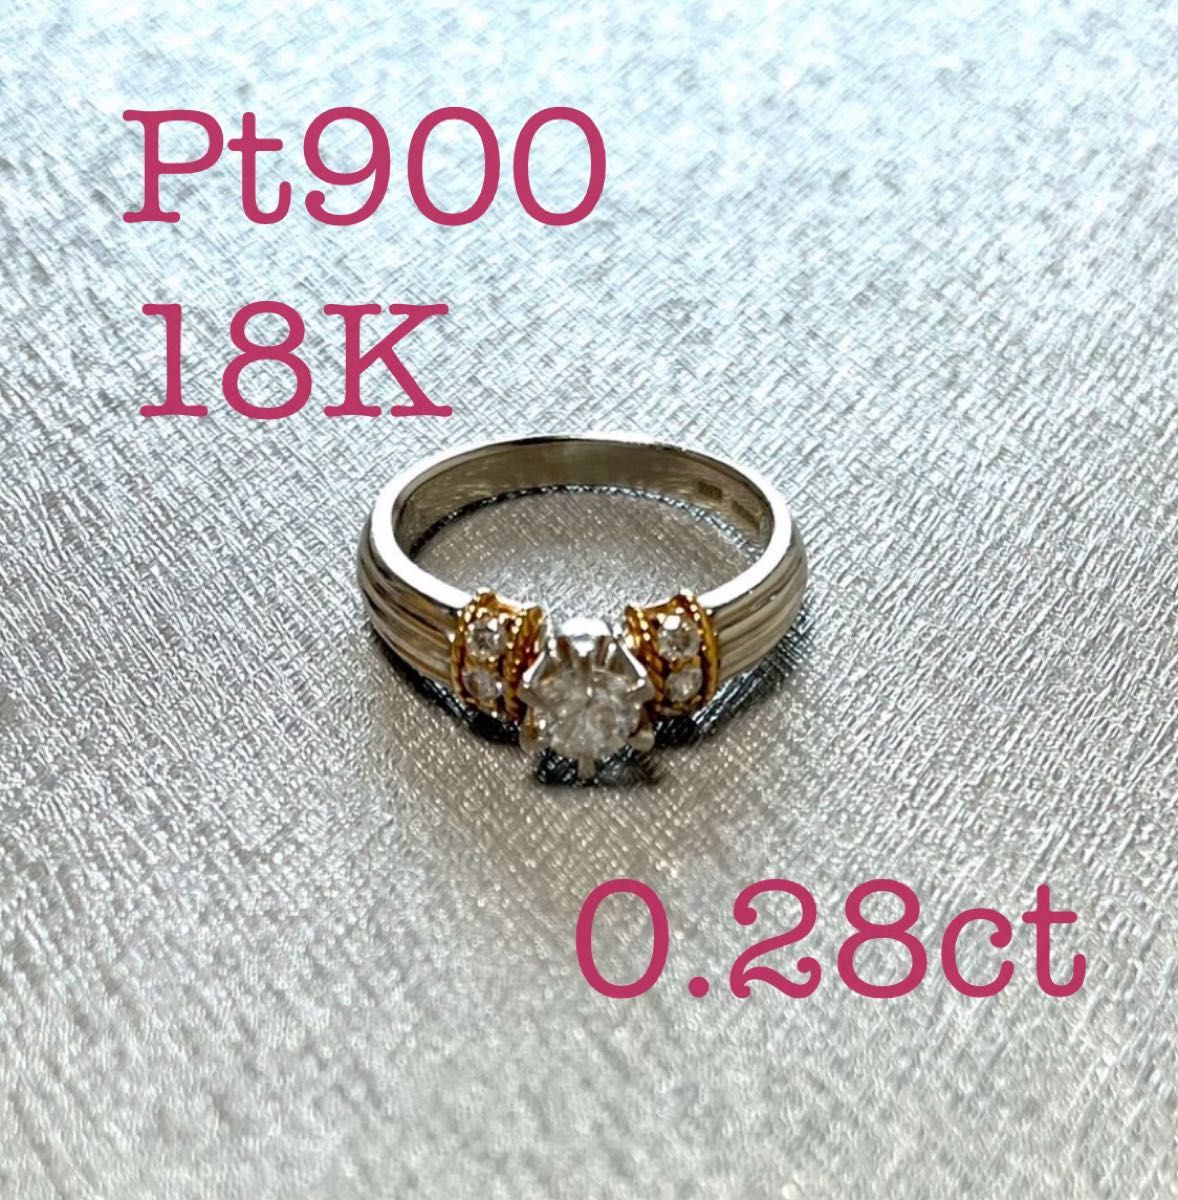 クリスティ ダイアモンド ダイヤリング 0.28ct Pt900 18k 18金 定価50万 リング 指輪 ダイヤ 婚約指輪